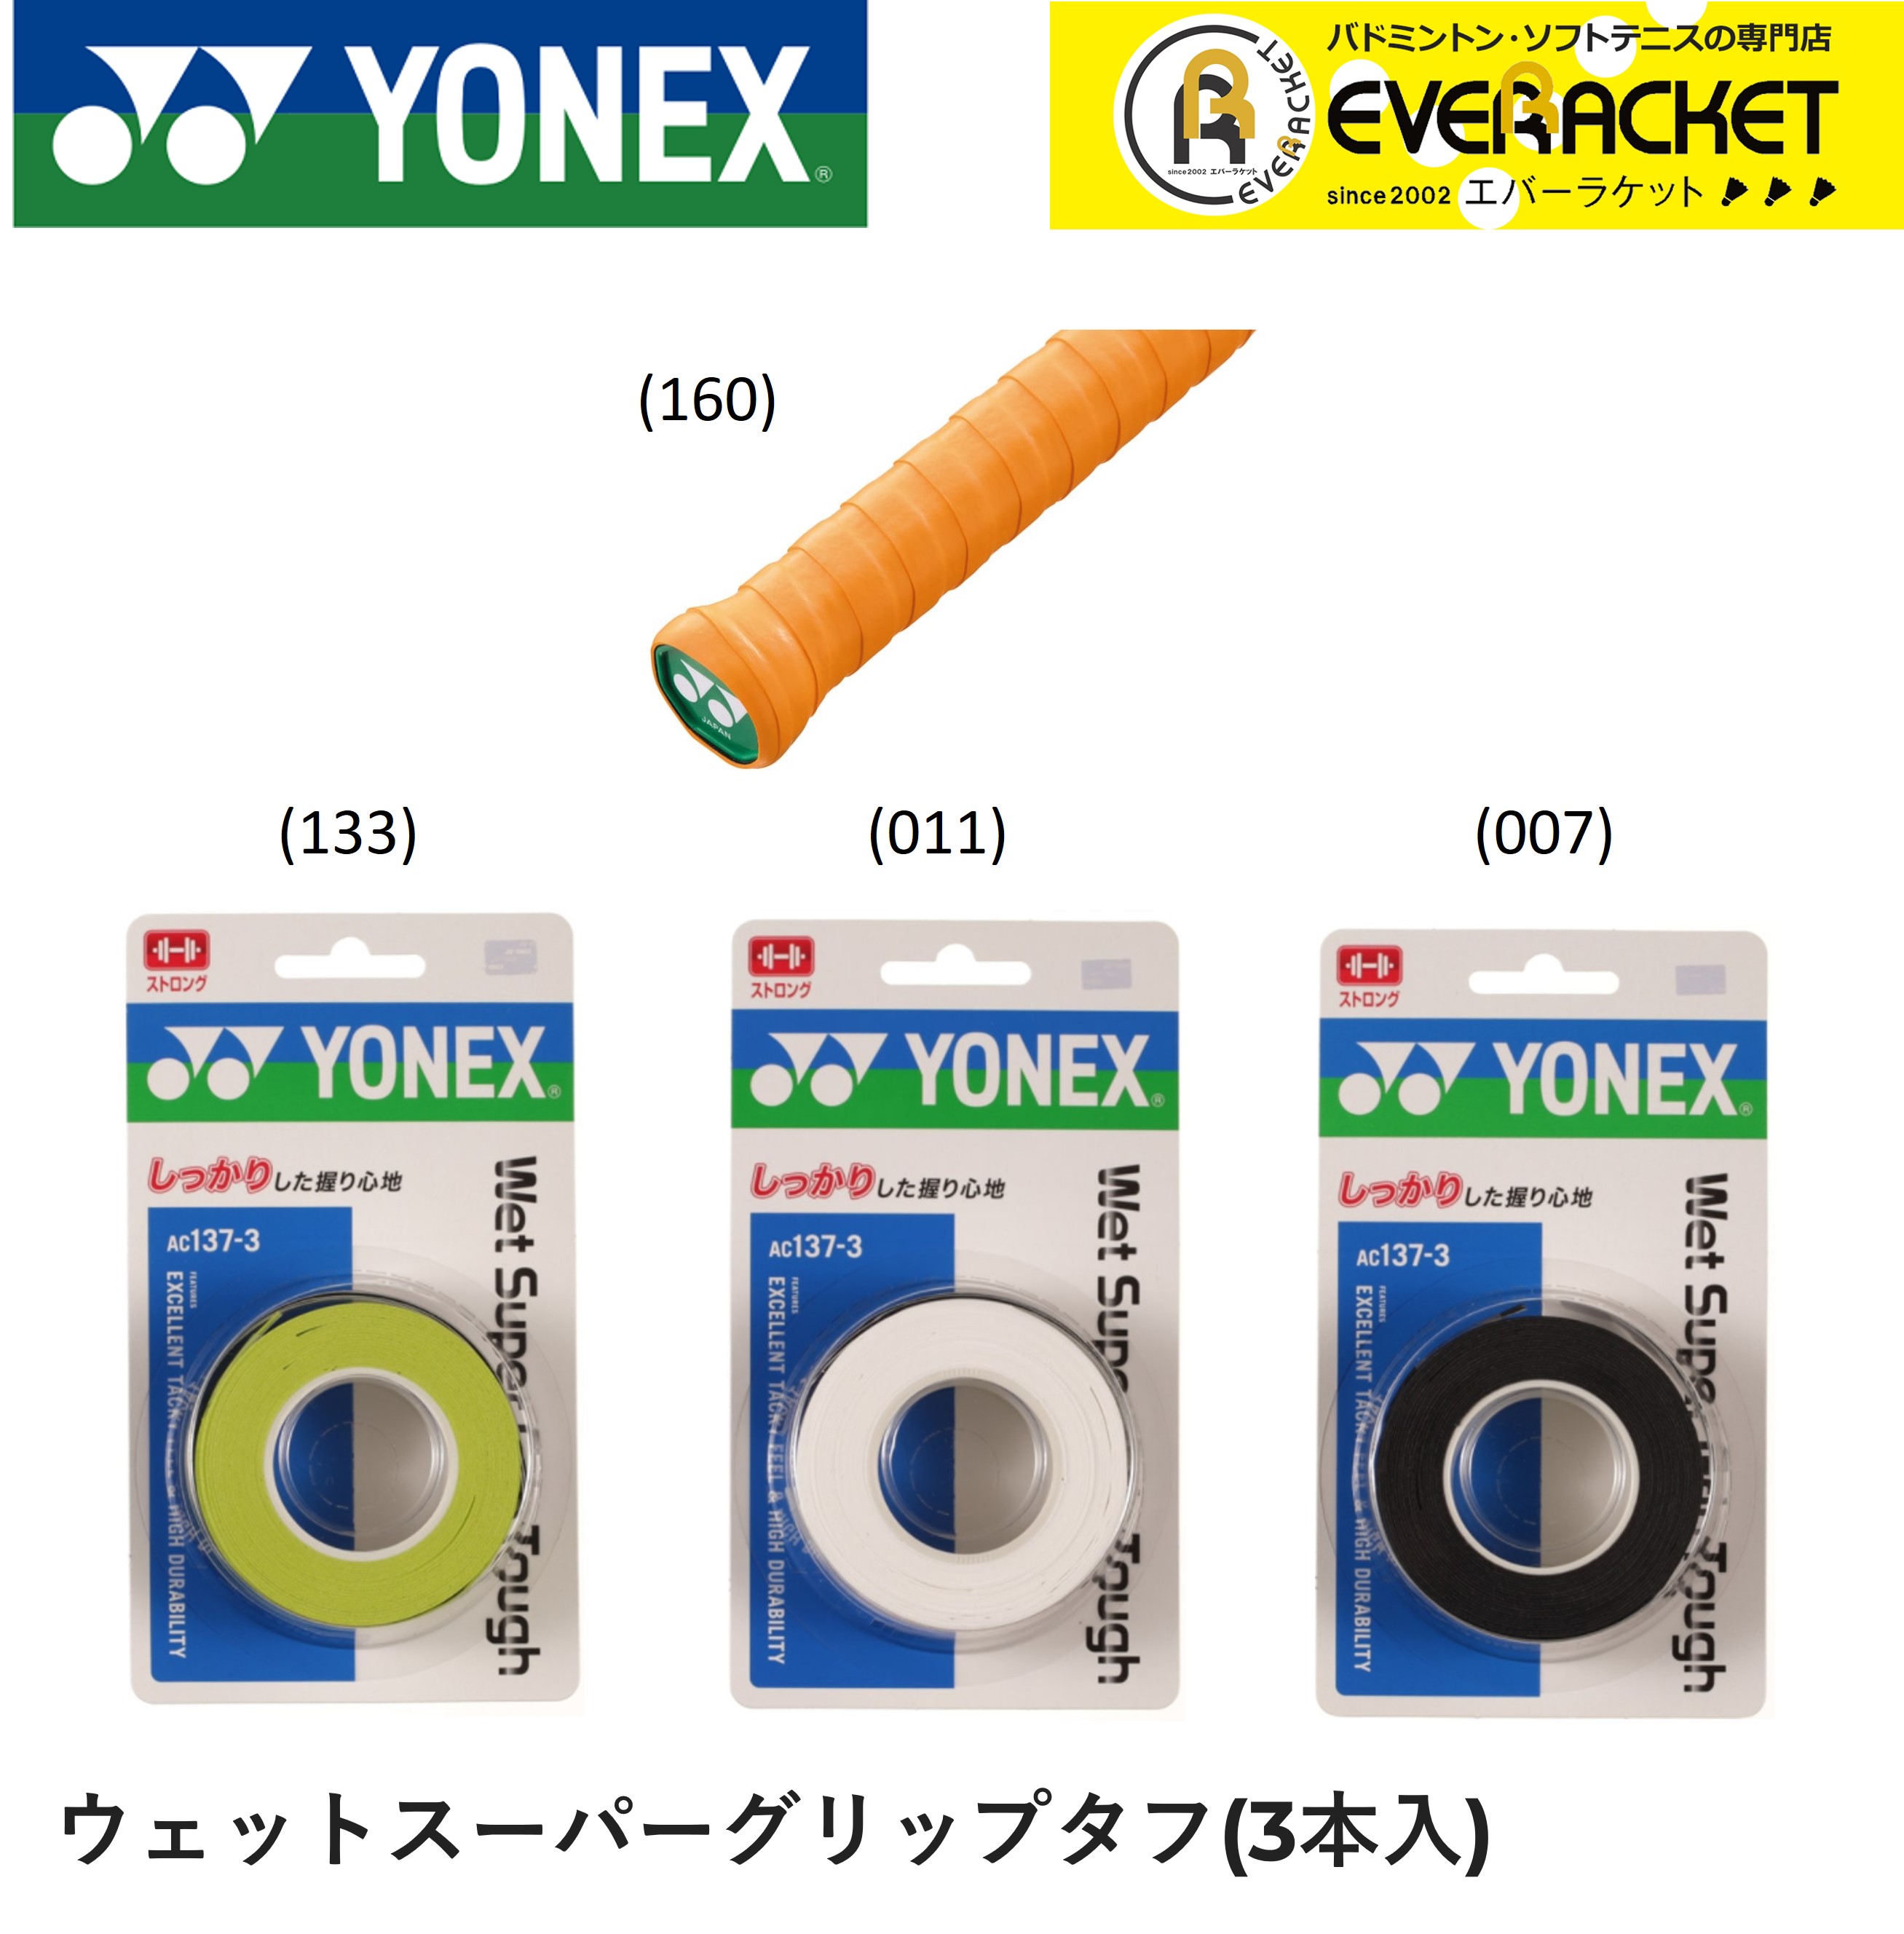 ヨネックス YONEX アクセサリー ウェットスーパーグリップタフ AC137-3 バドミントン ソフトテニス